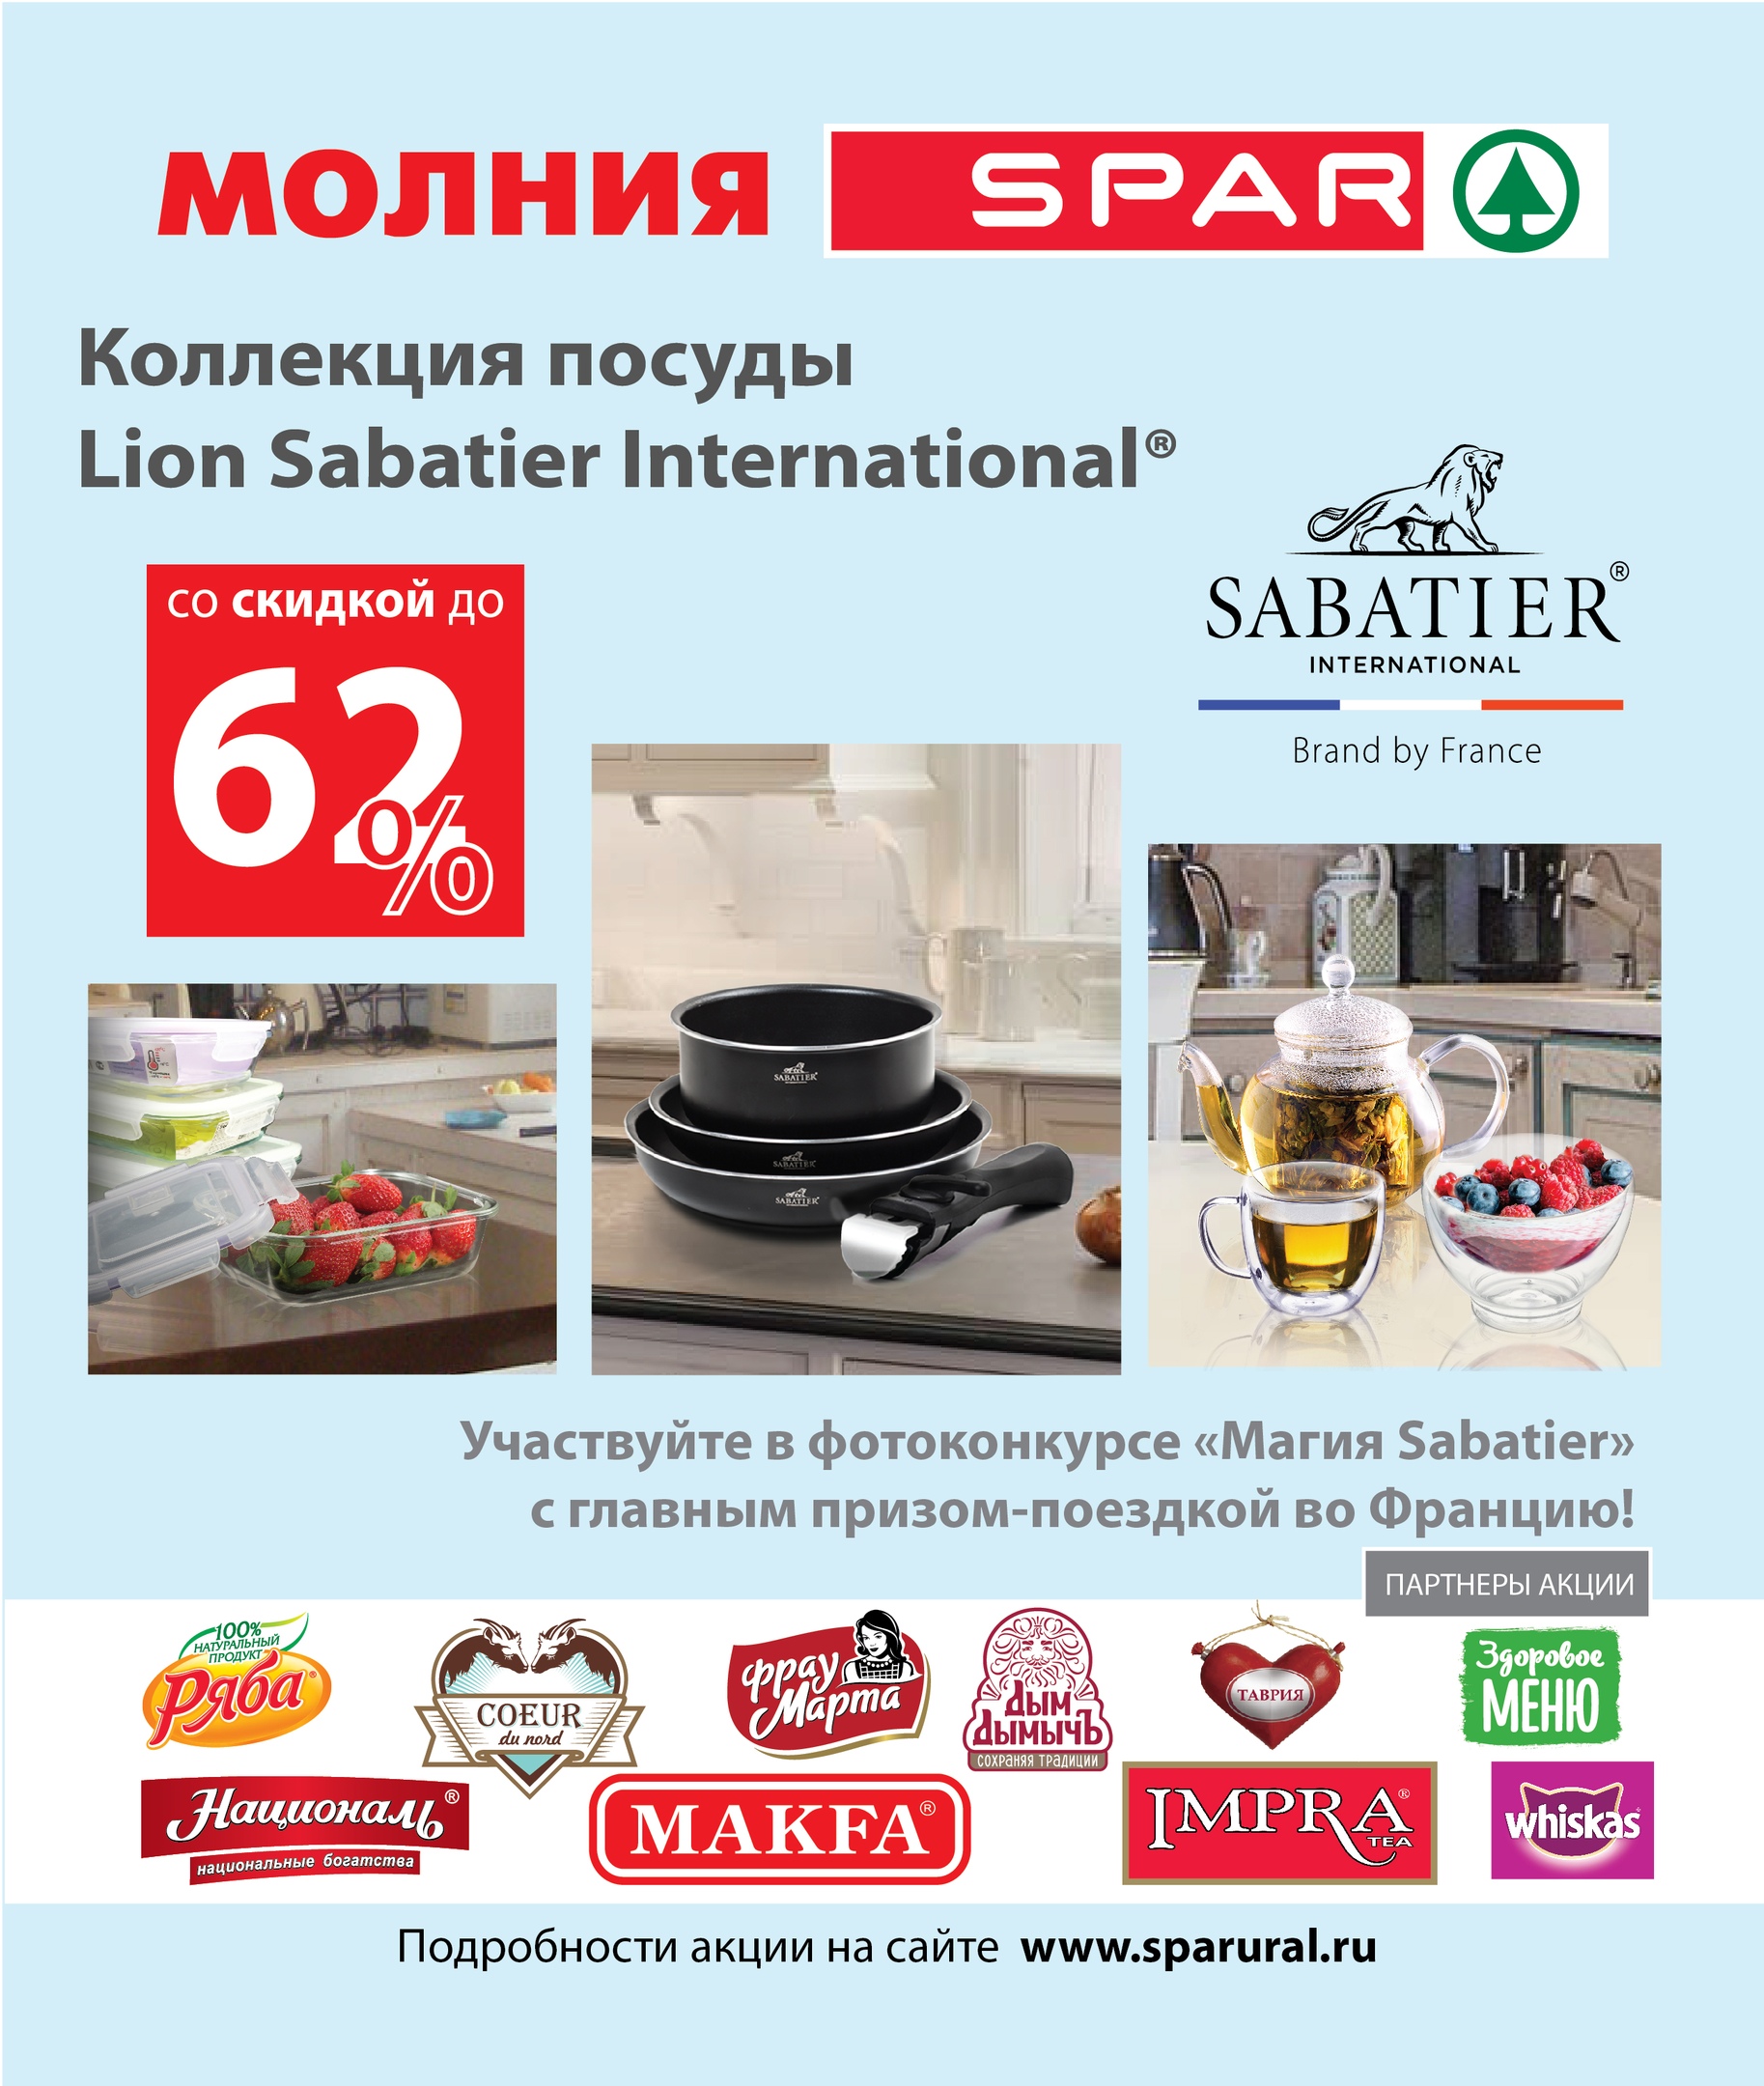 КОЛЛЕКЦИЯ ПОСУДЫ Lion Sabatier International по очень привлекательной цене в сети Молния и Spar!